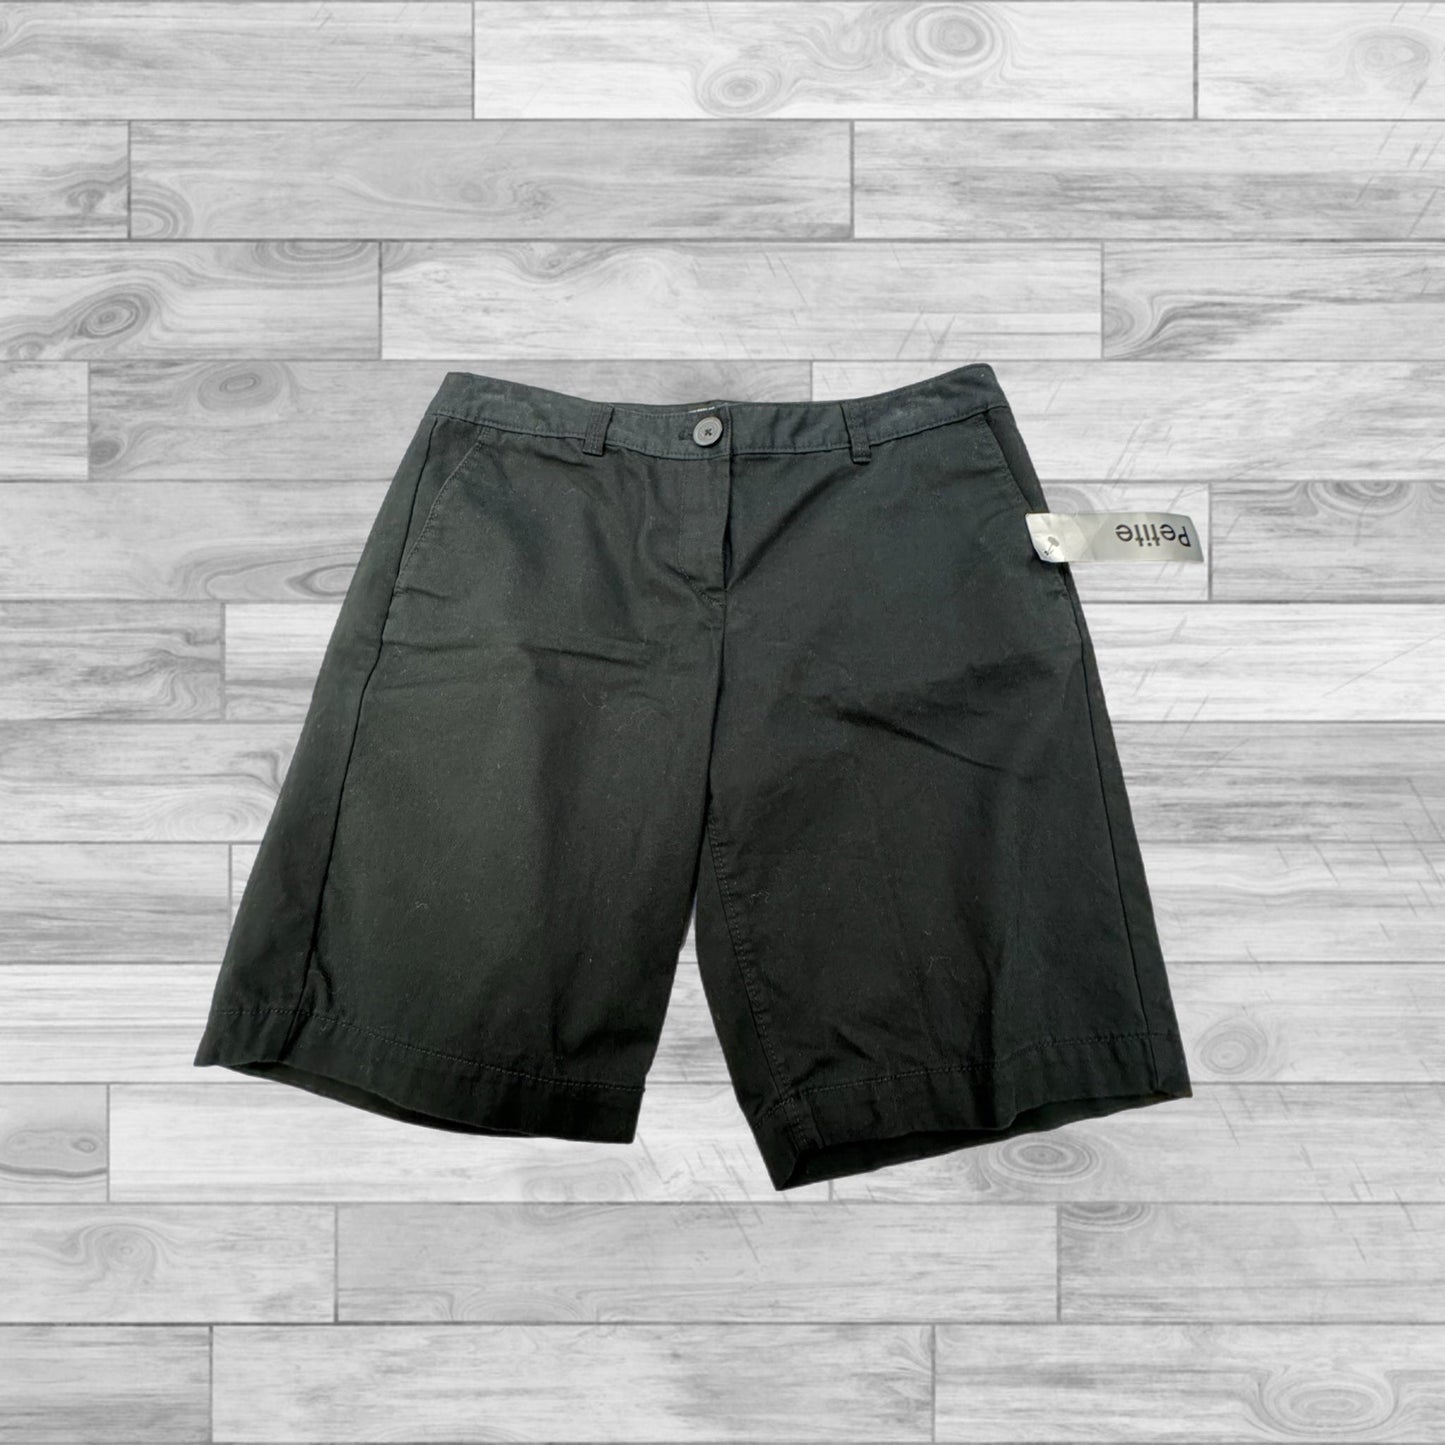 Black Shorts Loft, Size 6petite